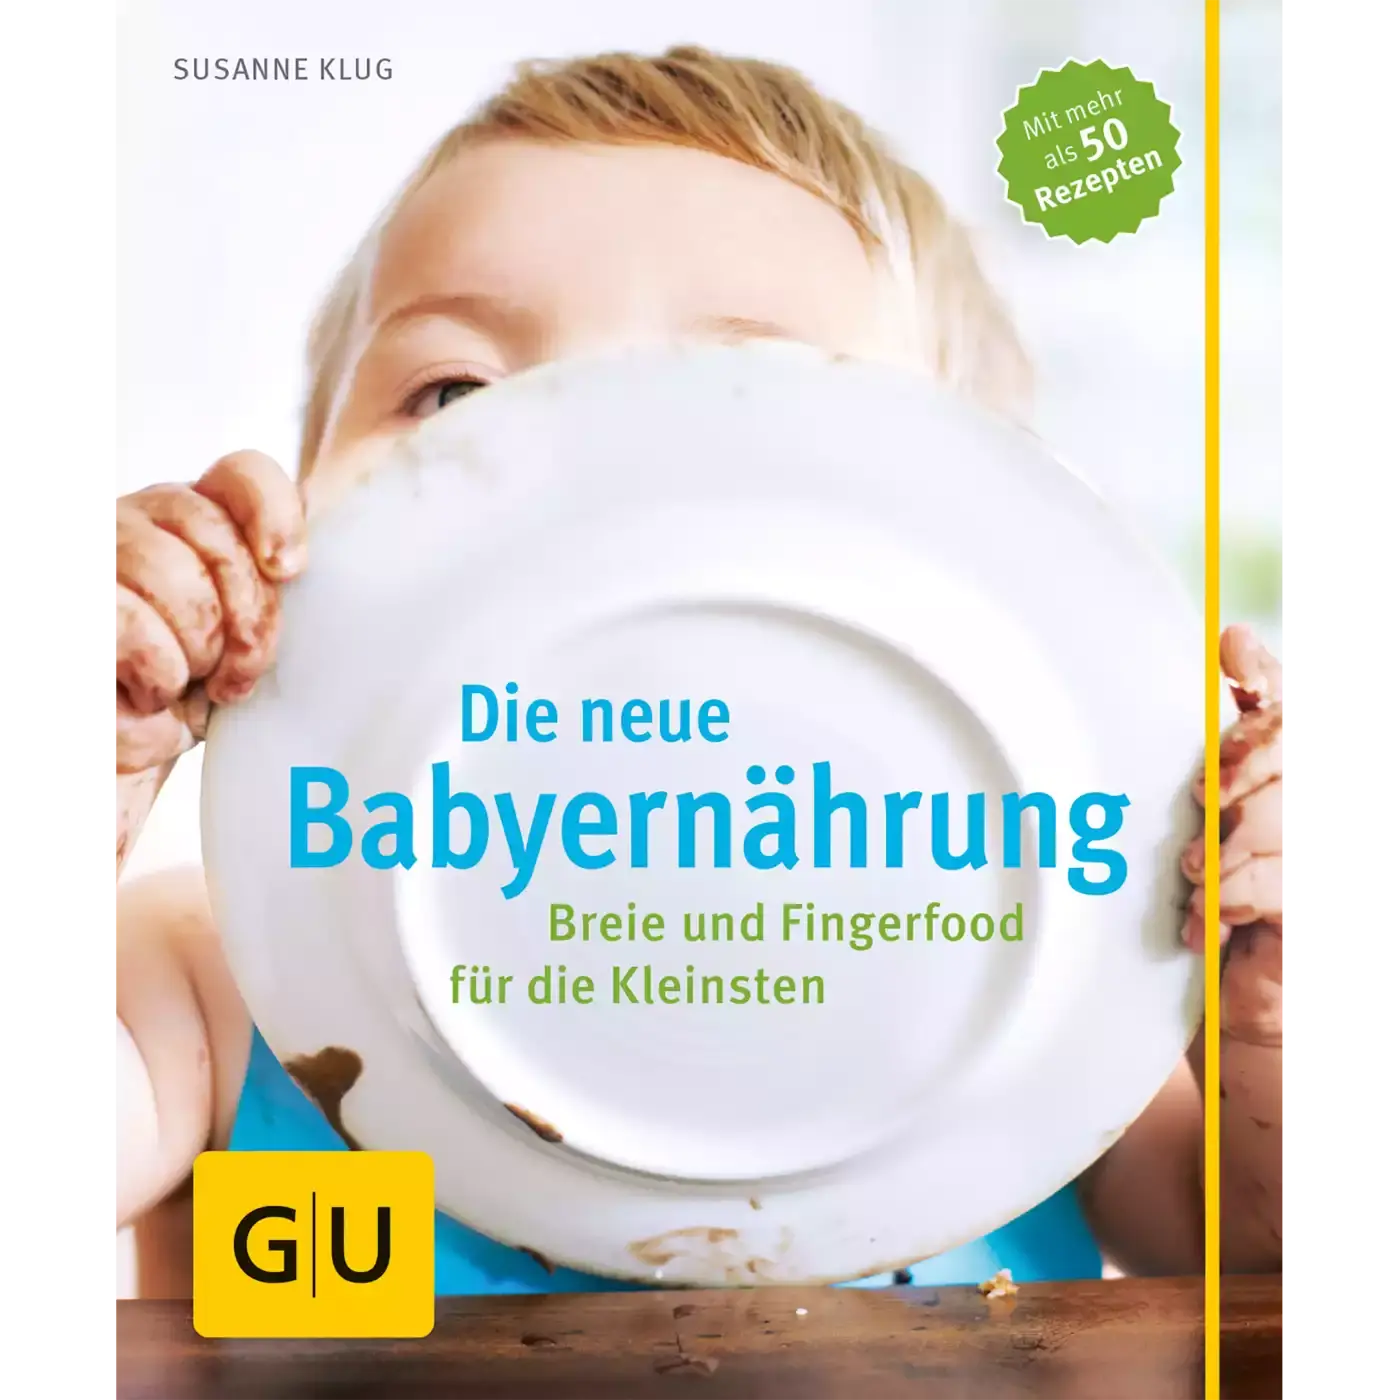 Die neue Babyernährung GU Mehrfarbig 2000560157709 1